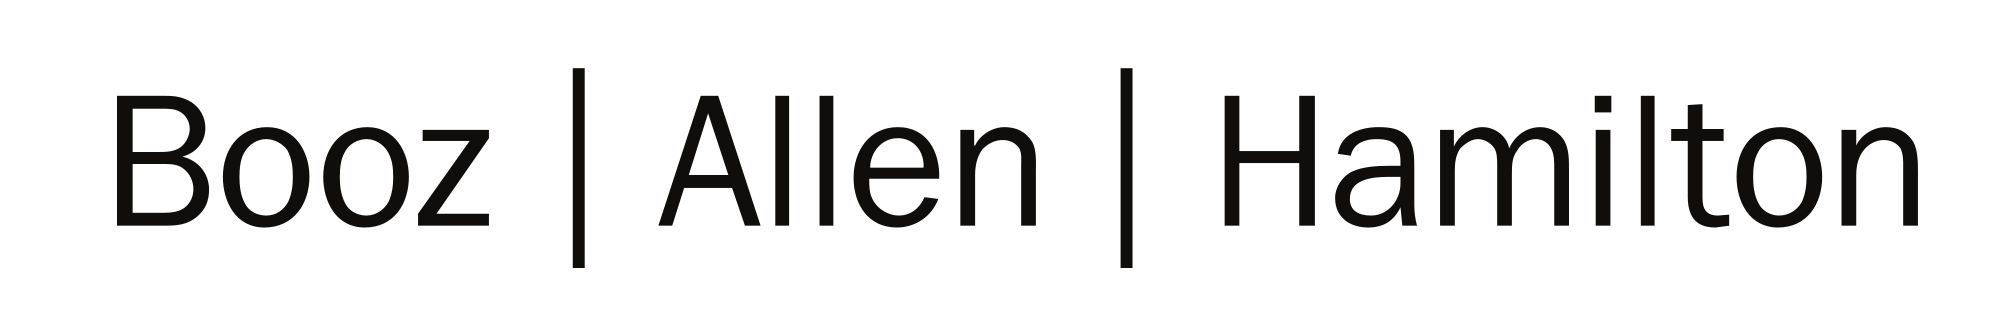 BAH logo.png